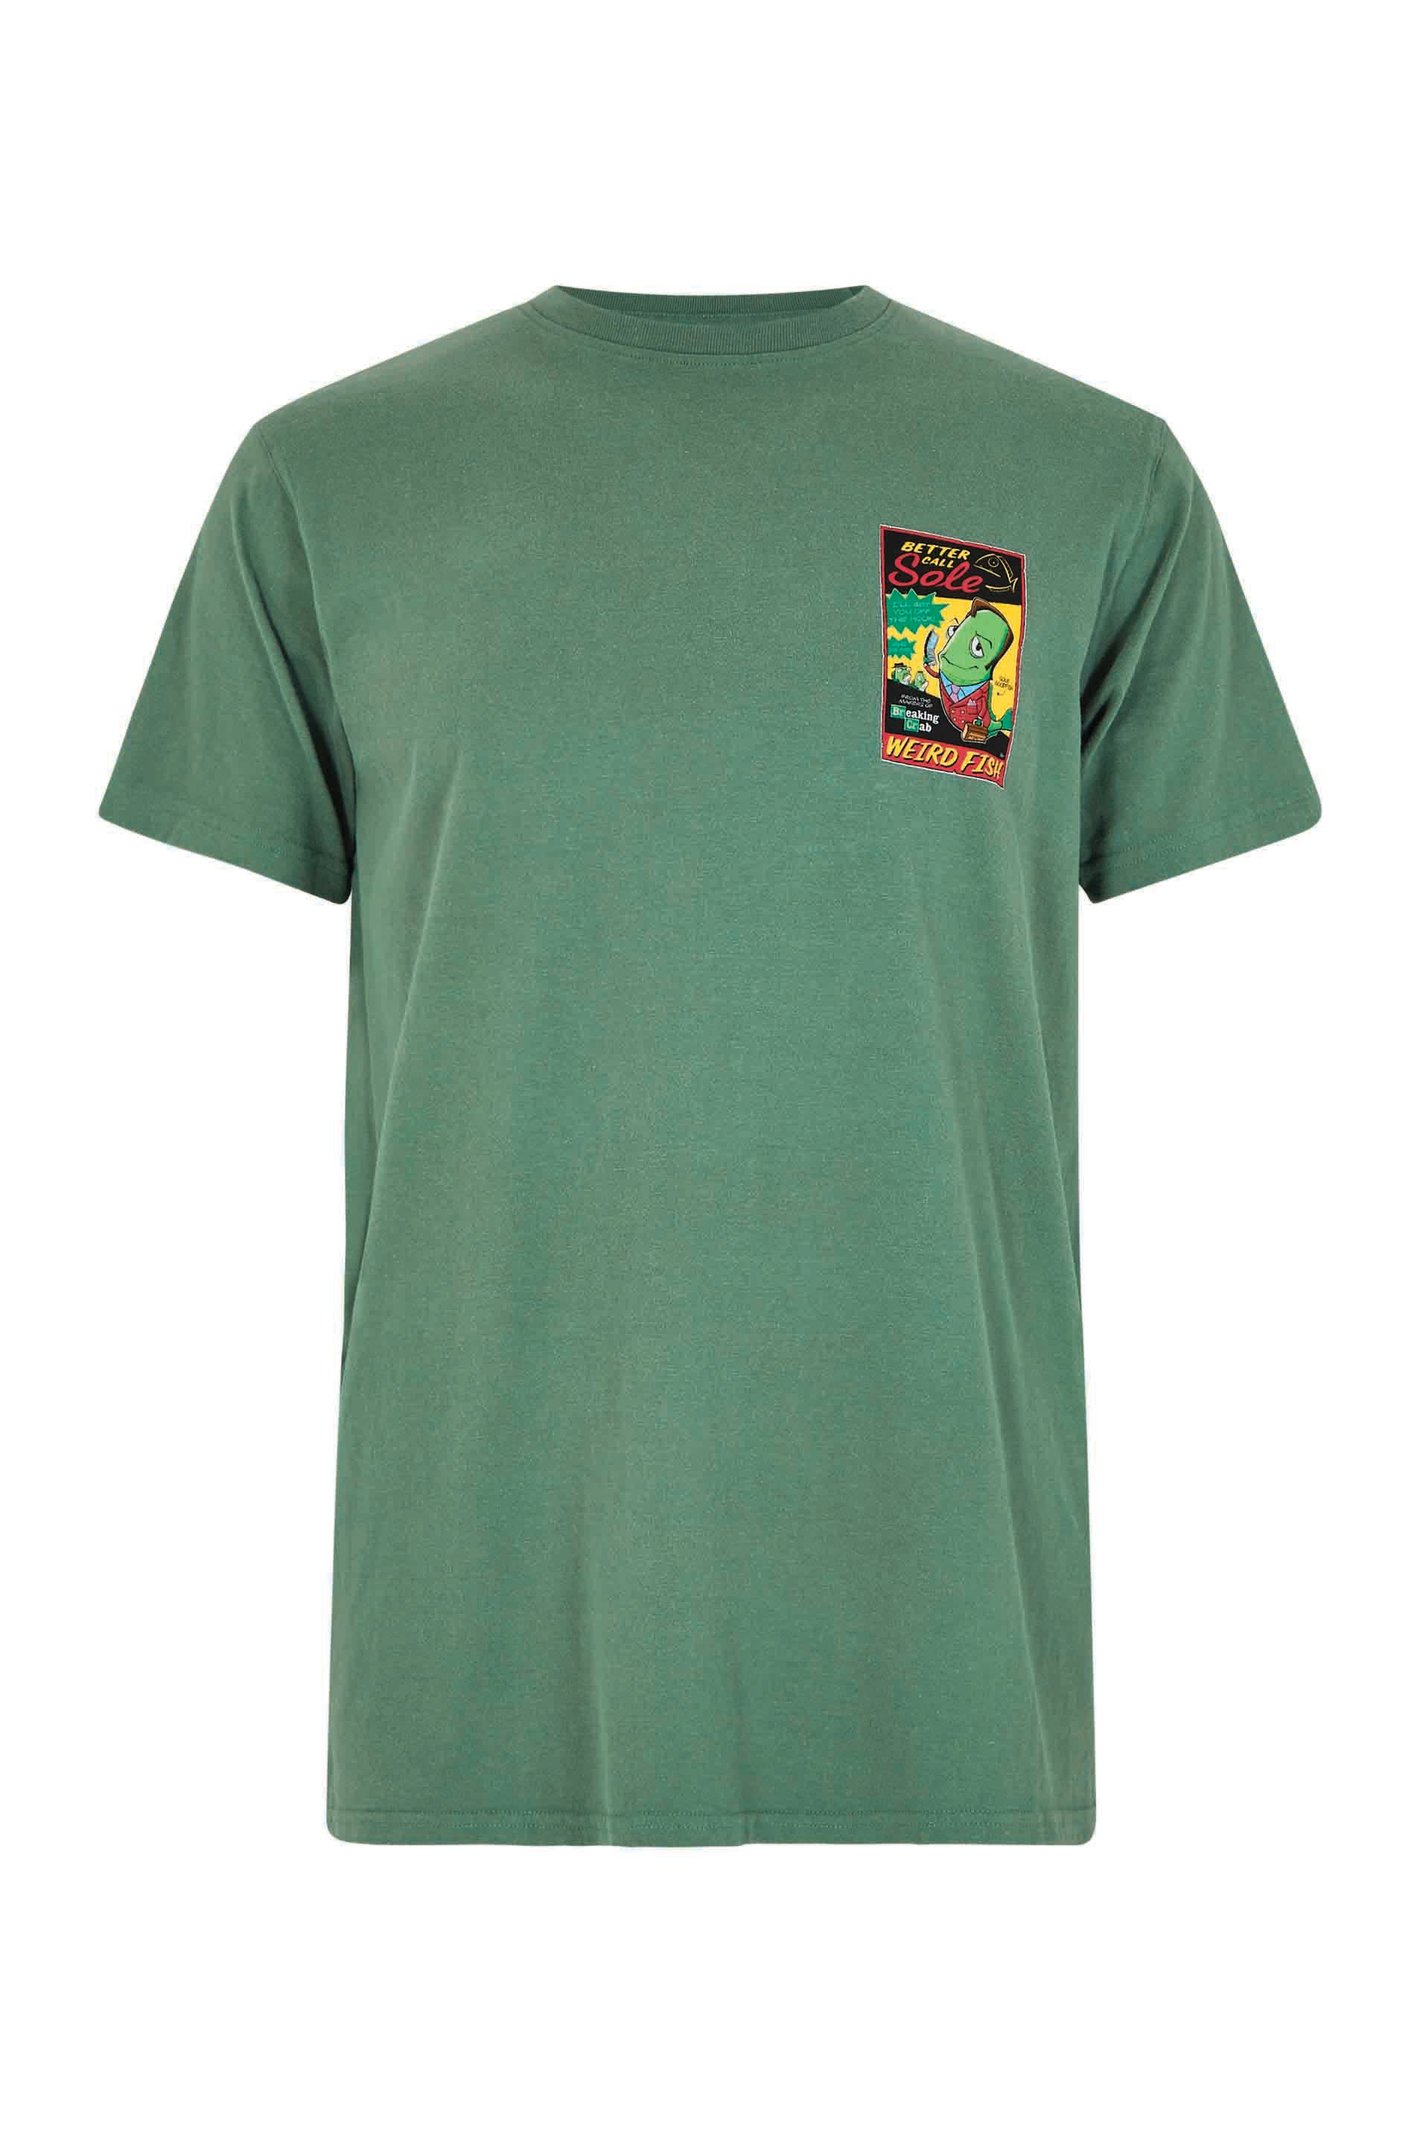 Weird Fish Call Sole Artist T-Shirt Dusky Green Size 4XL